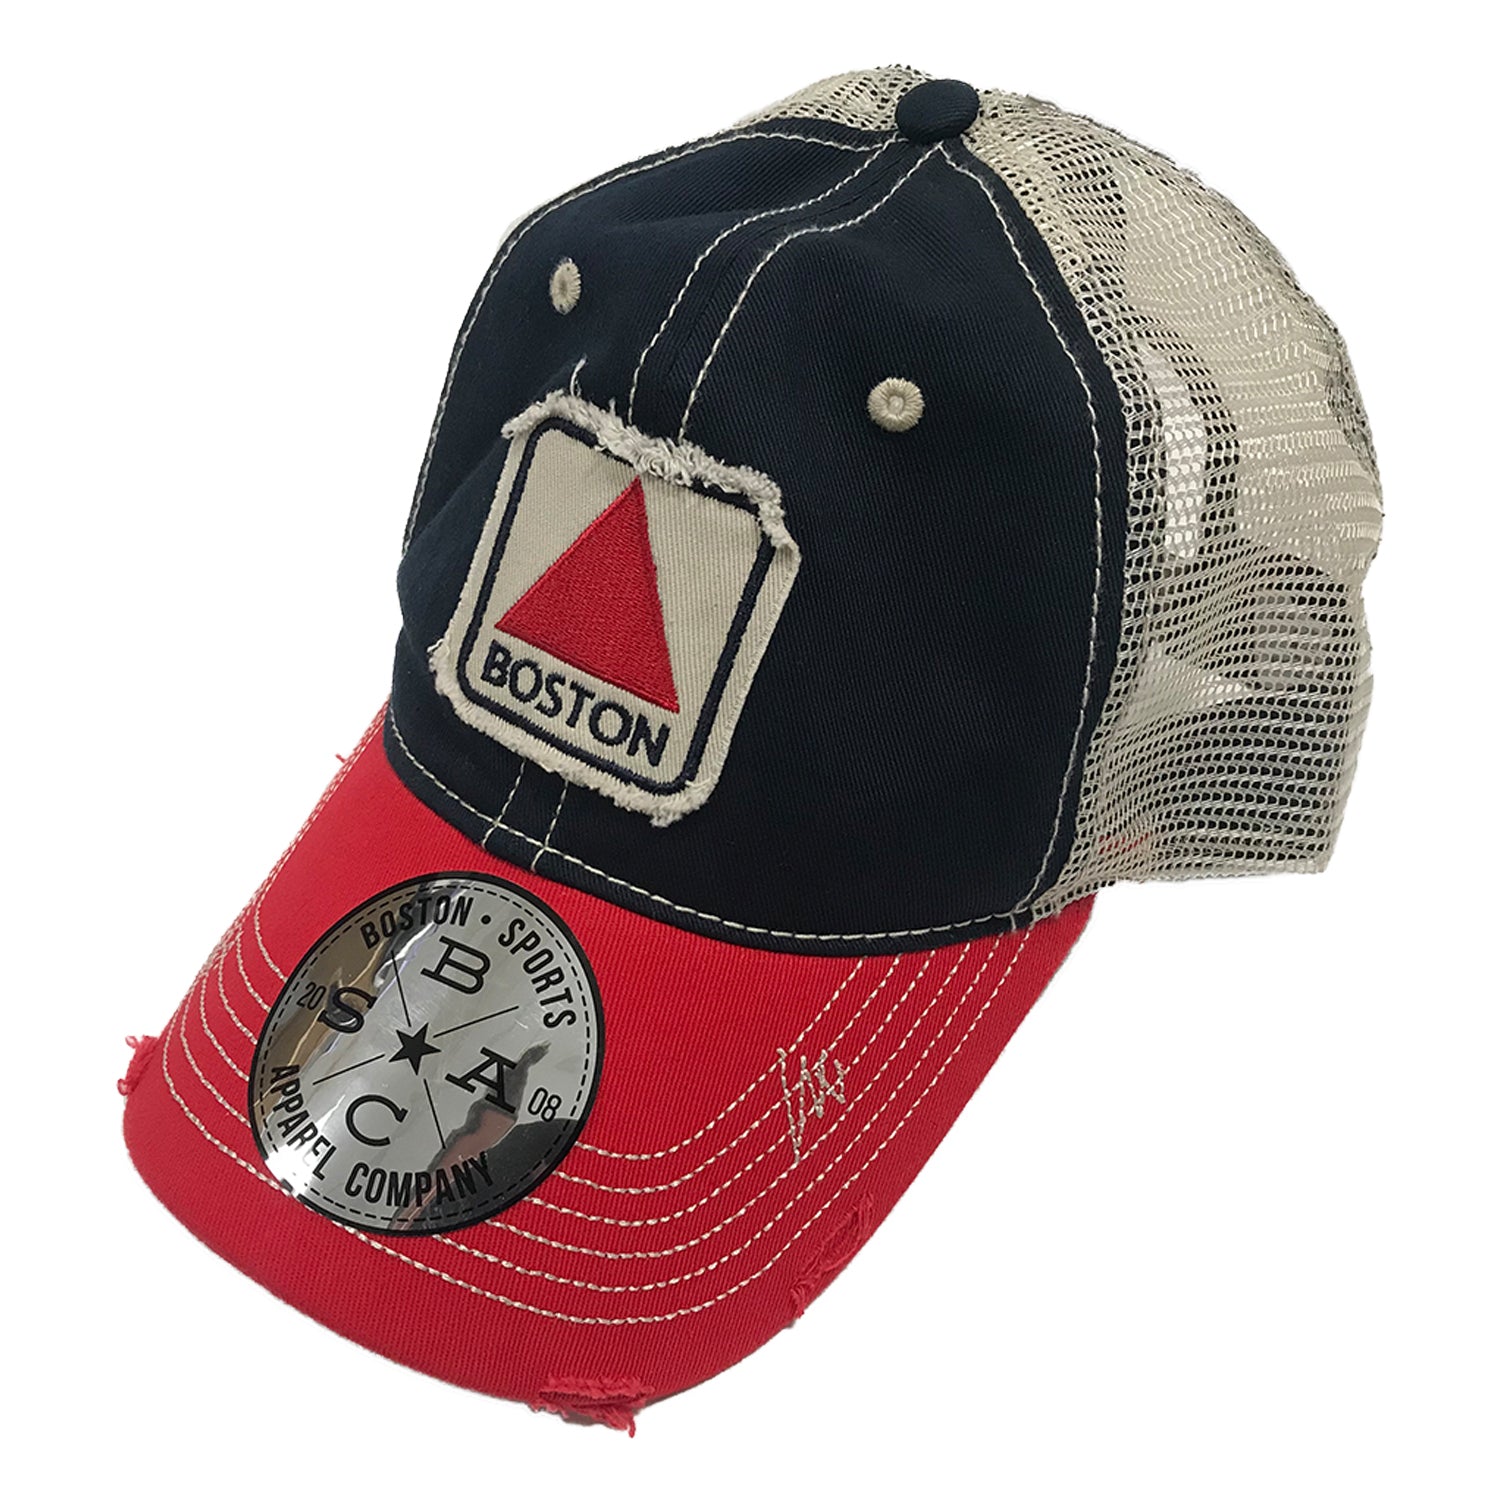 Boston Sports Apparel Trucker Hat: Boston Citgo - Navy/Red